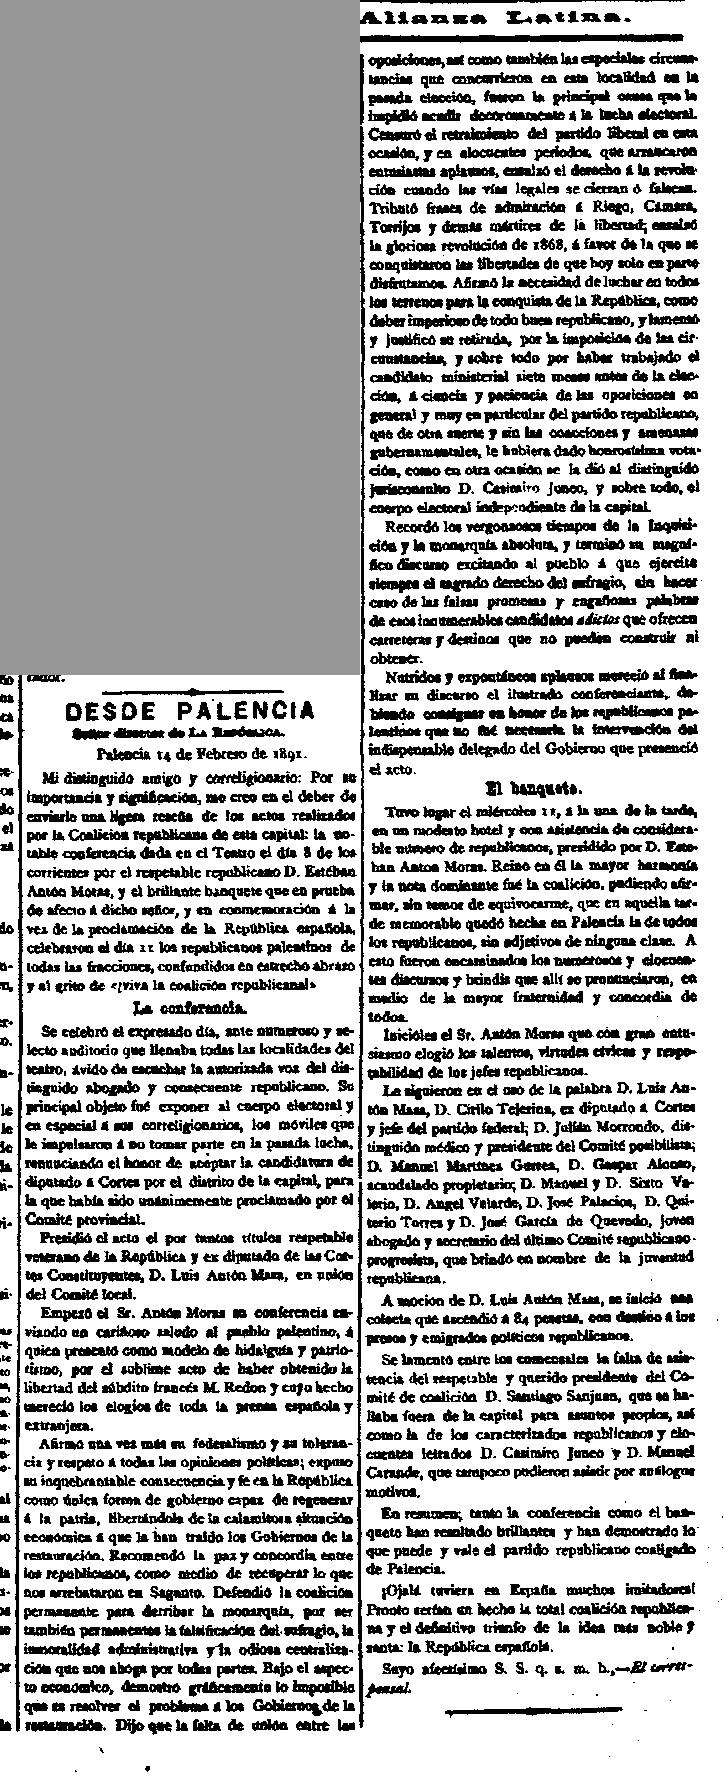 garcia-de-quevedo-no-mitin-republicano-en-palencia-la-republica-1721891